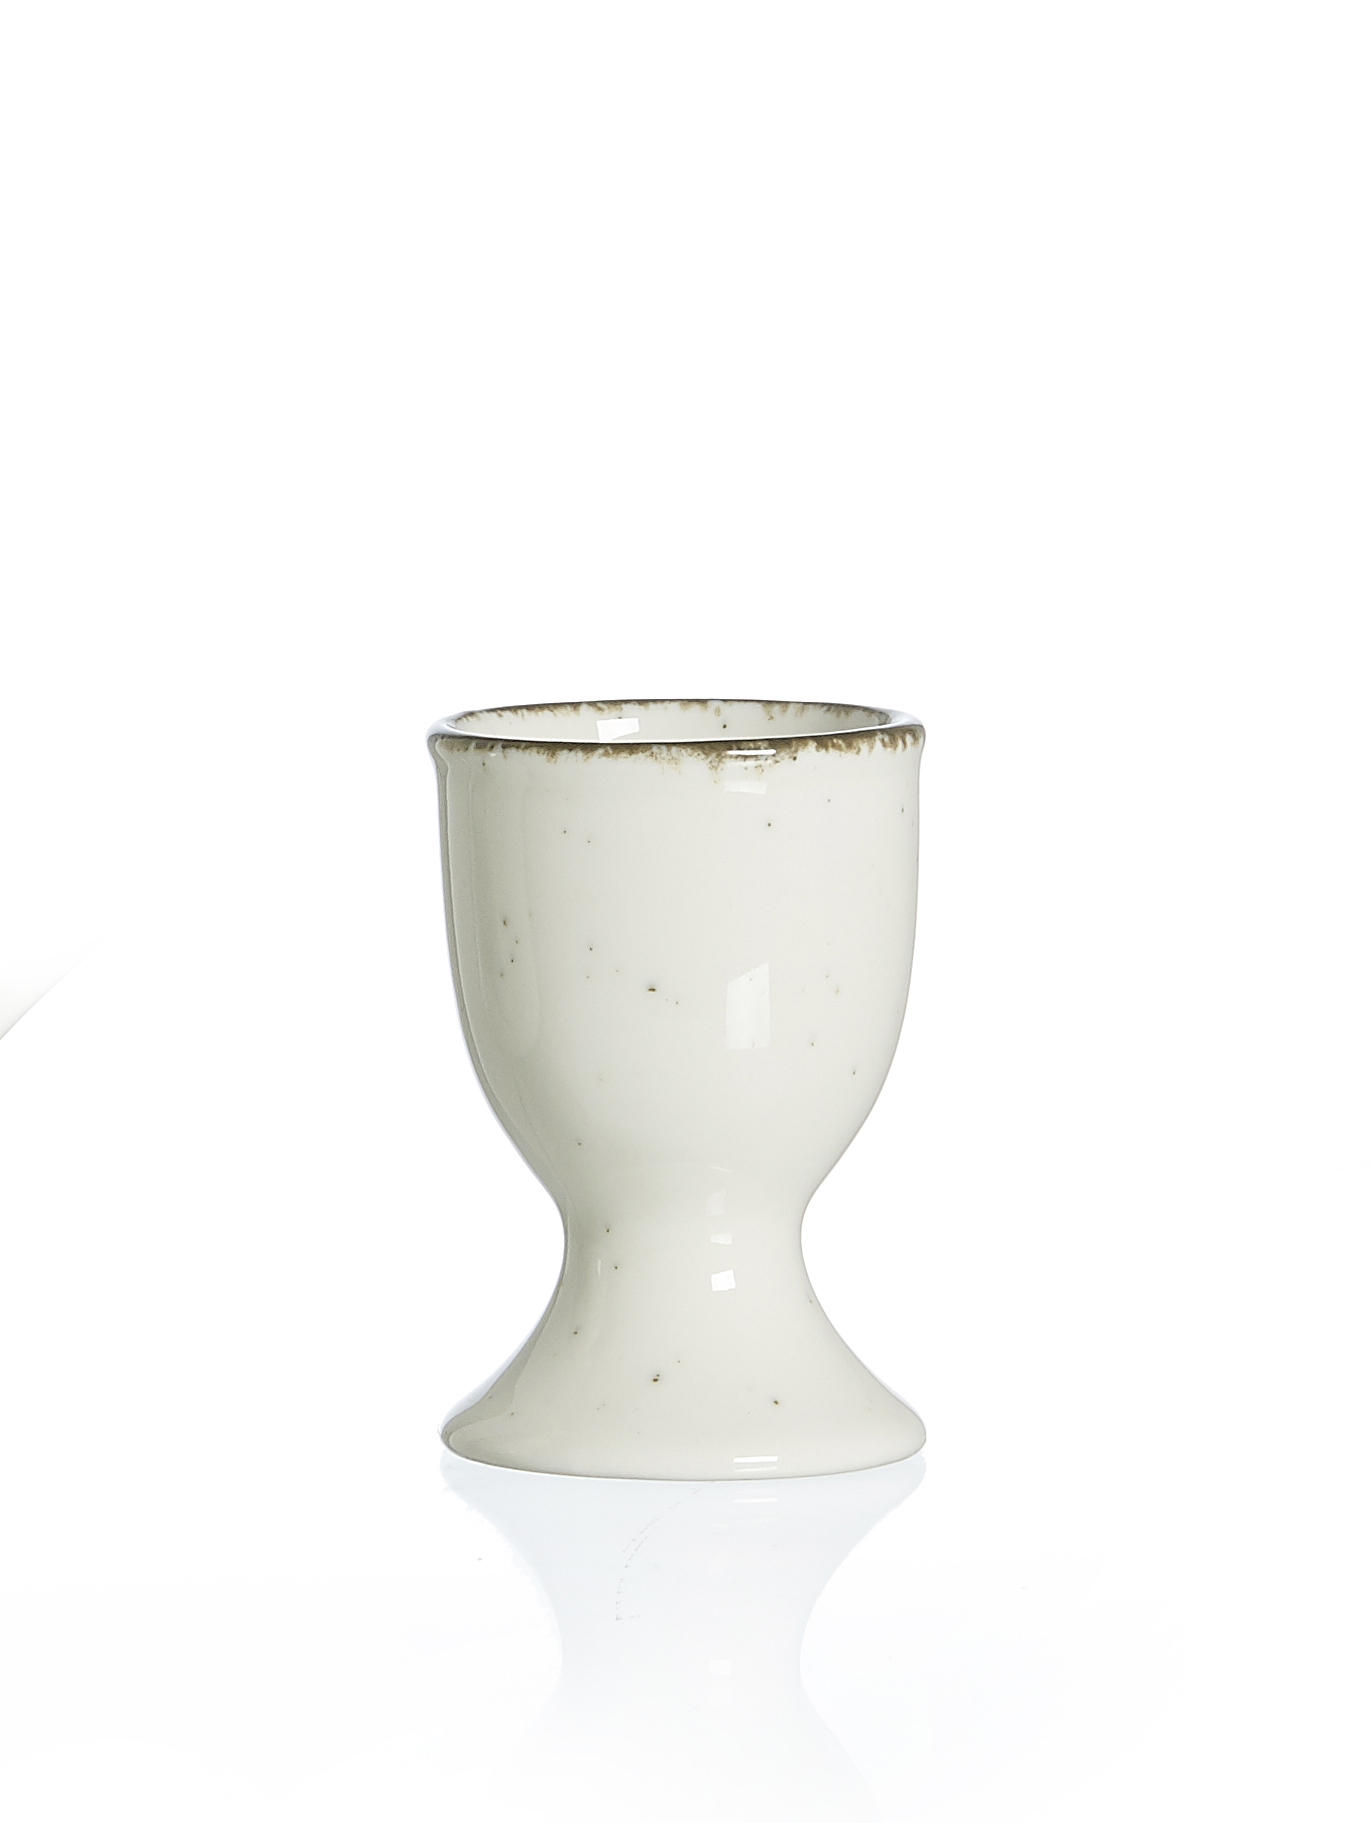 EIERBECHER Keramik Steinzeug  - Creme/Braun, Keramik (5/5/7cm) - Ritzenhoff Breker